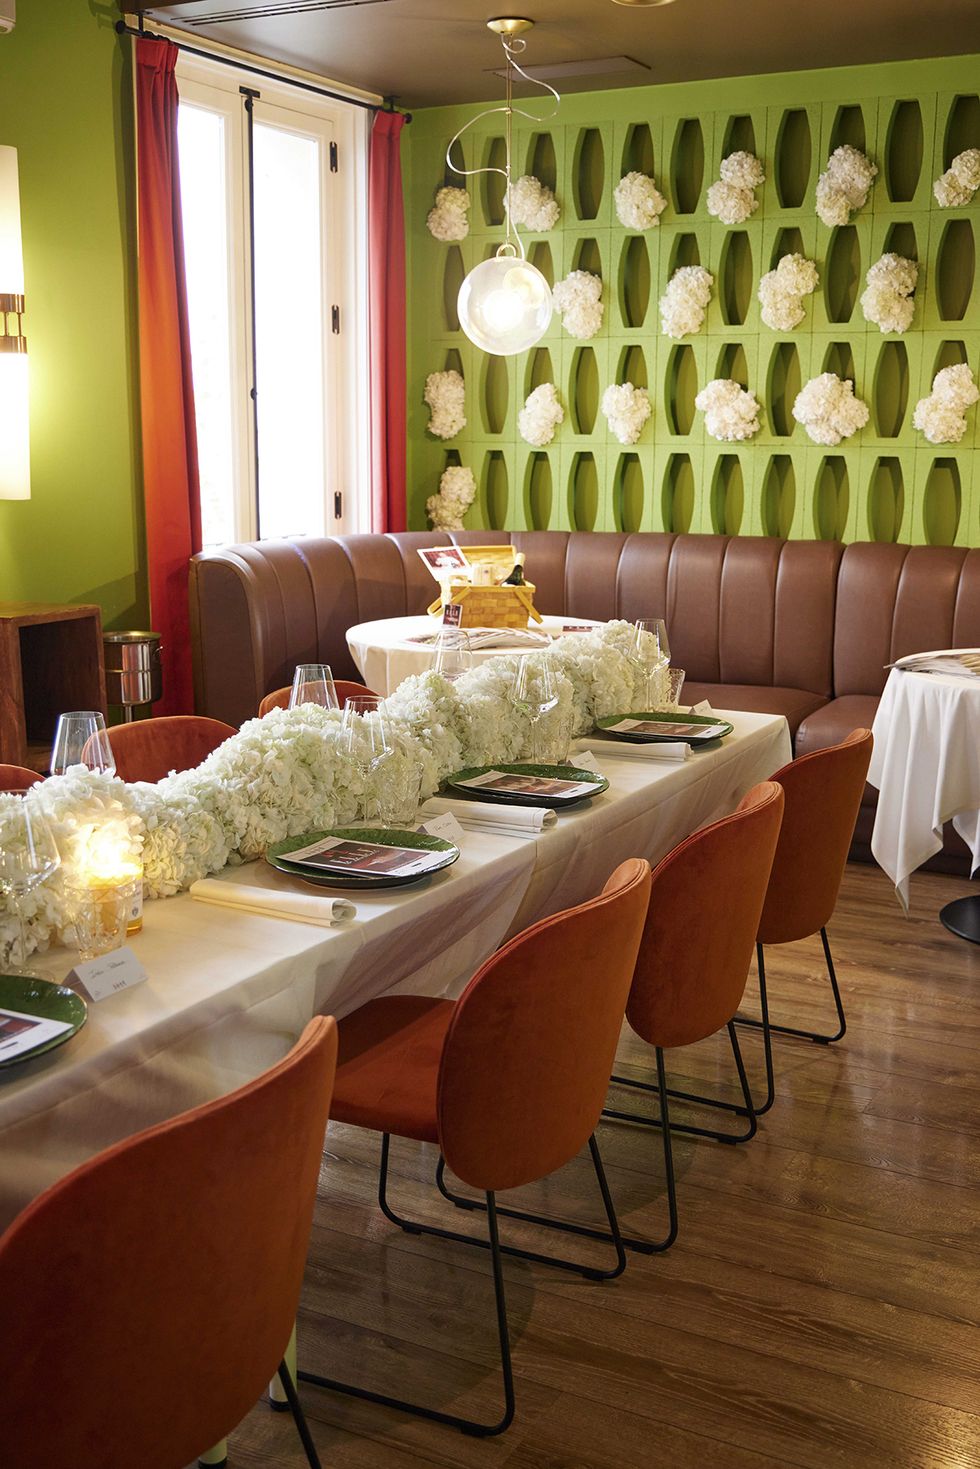 cena 'dolce vita' con la pasta garofalo y los vinos san marzano en el restaurante noi dentro del x aniversario de elle gourmet